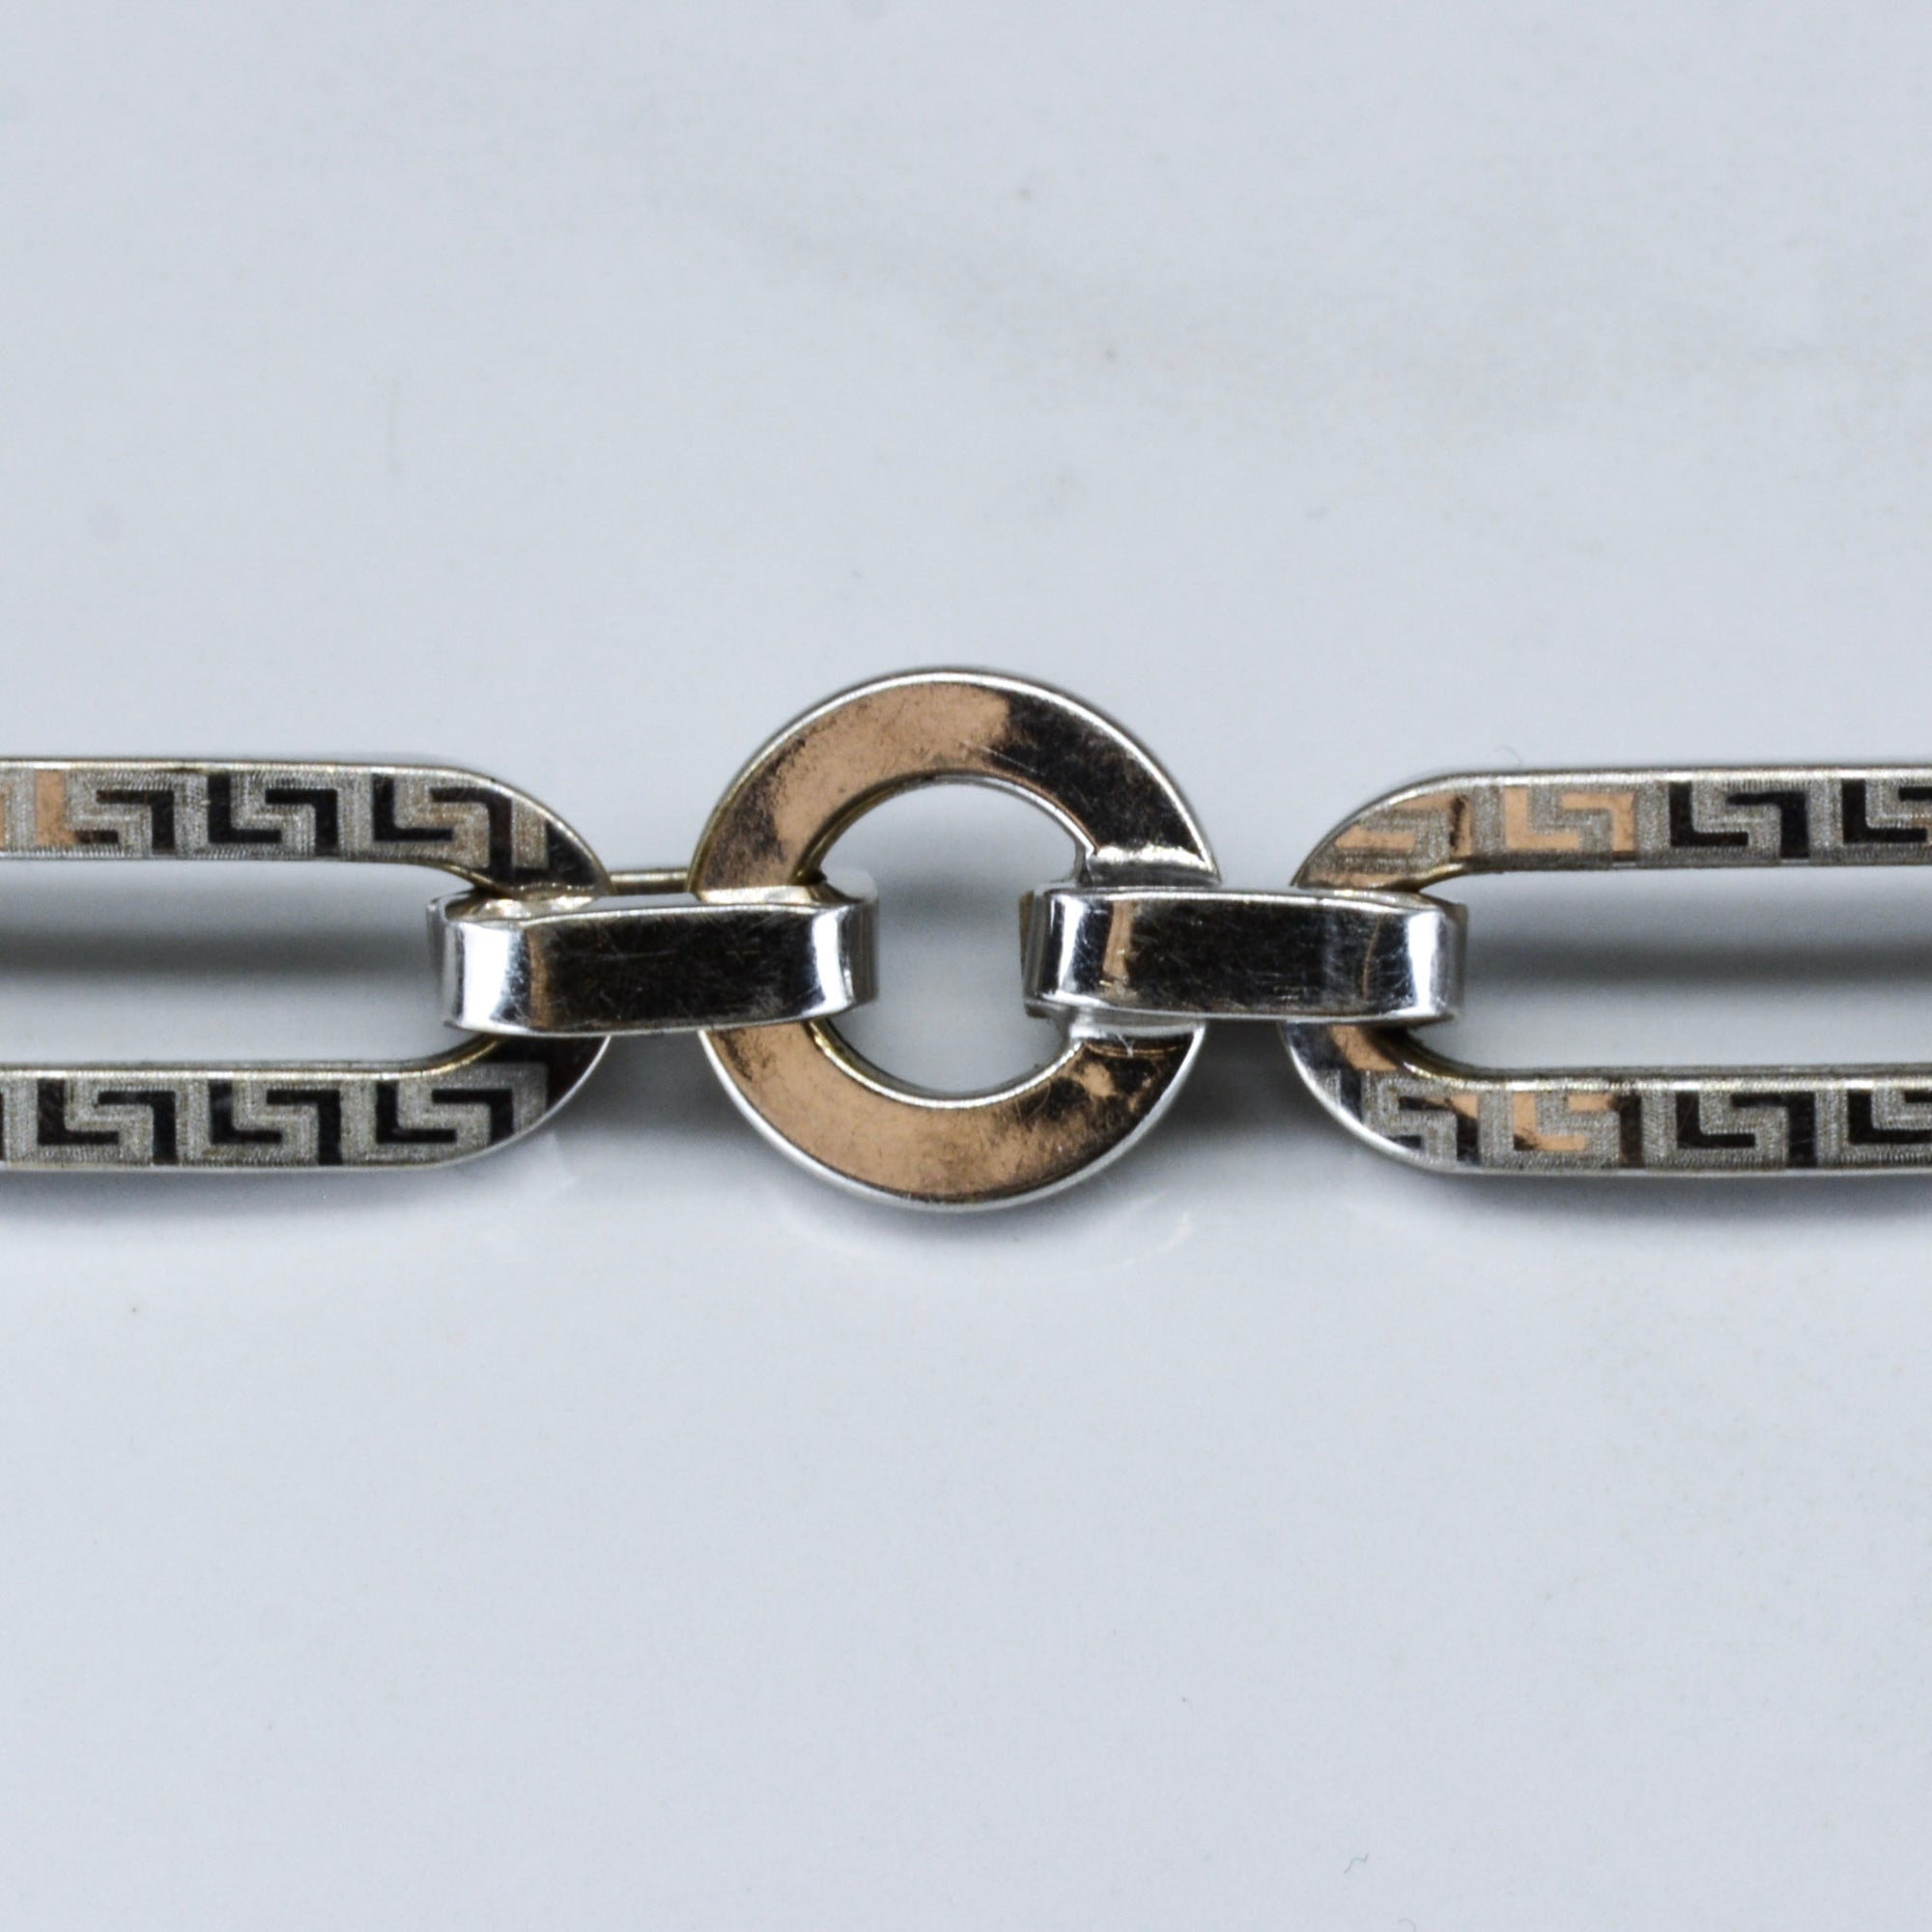 18k White Gold Patterned Chain Bracelet | 8